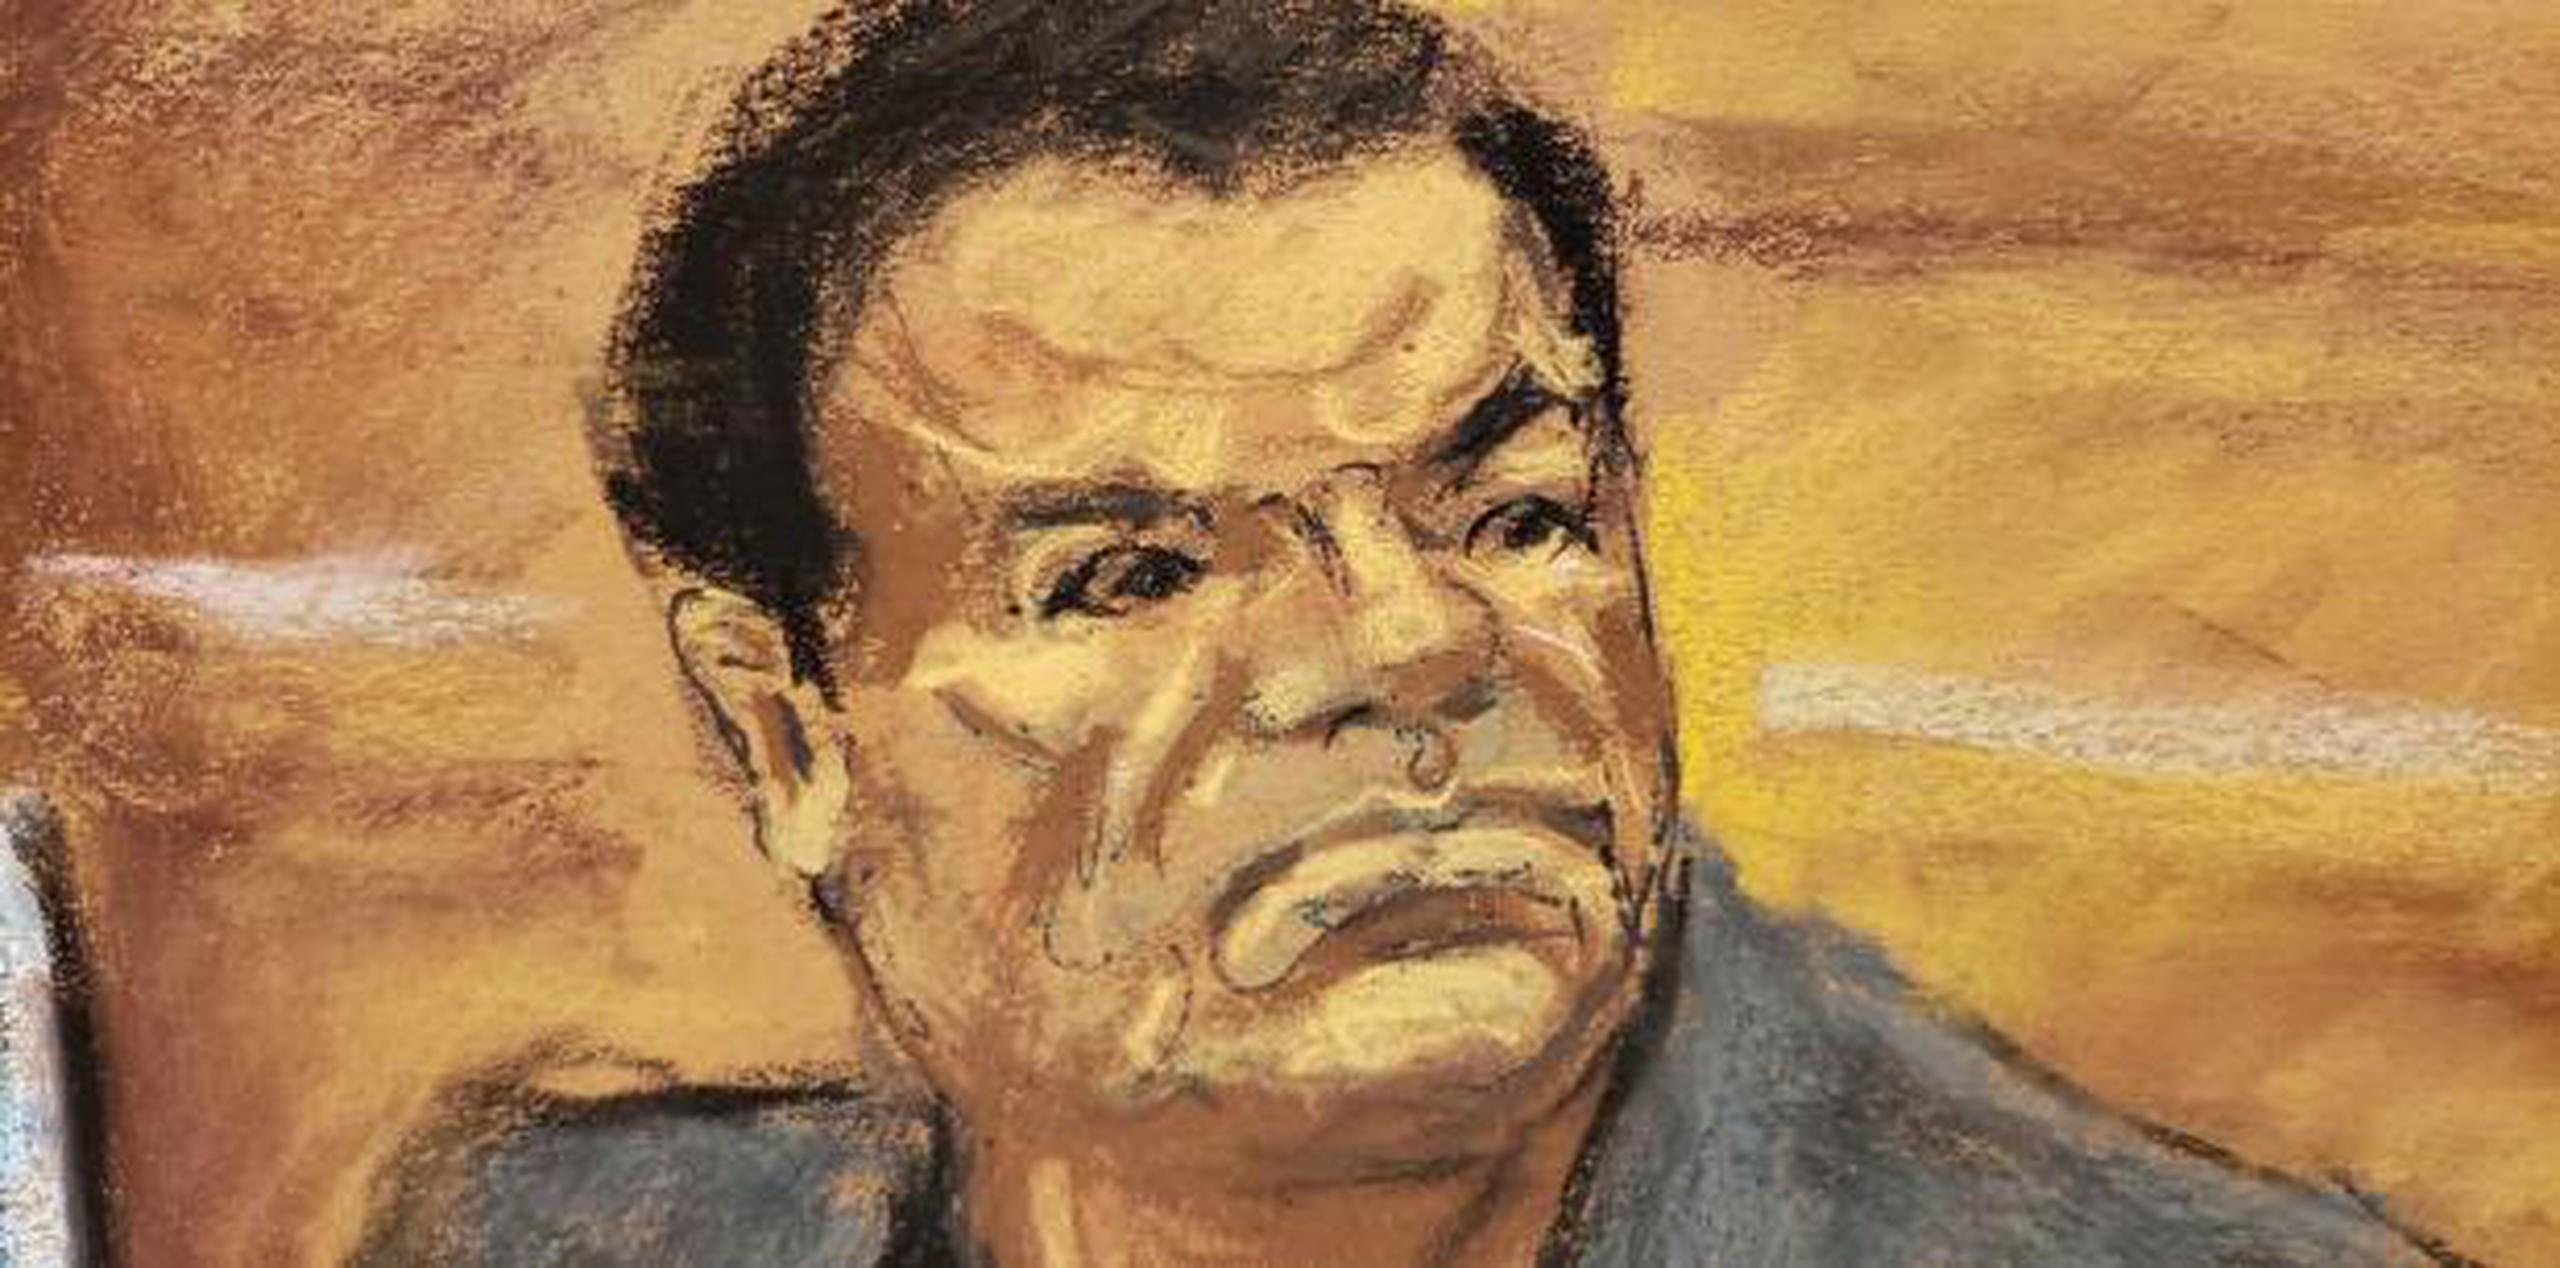 El Chapo se ha declarado inocente de acusaciones de acumular una fortuna multimillonaria al traficar toneladas de cocaína y otras drogas desde México a Estados Unidos. (EFE / Jane Rosenberg)